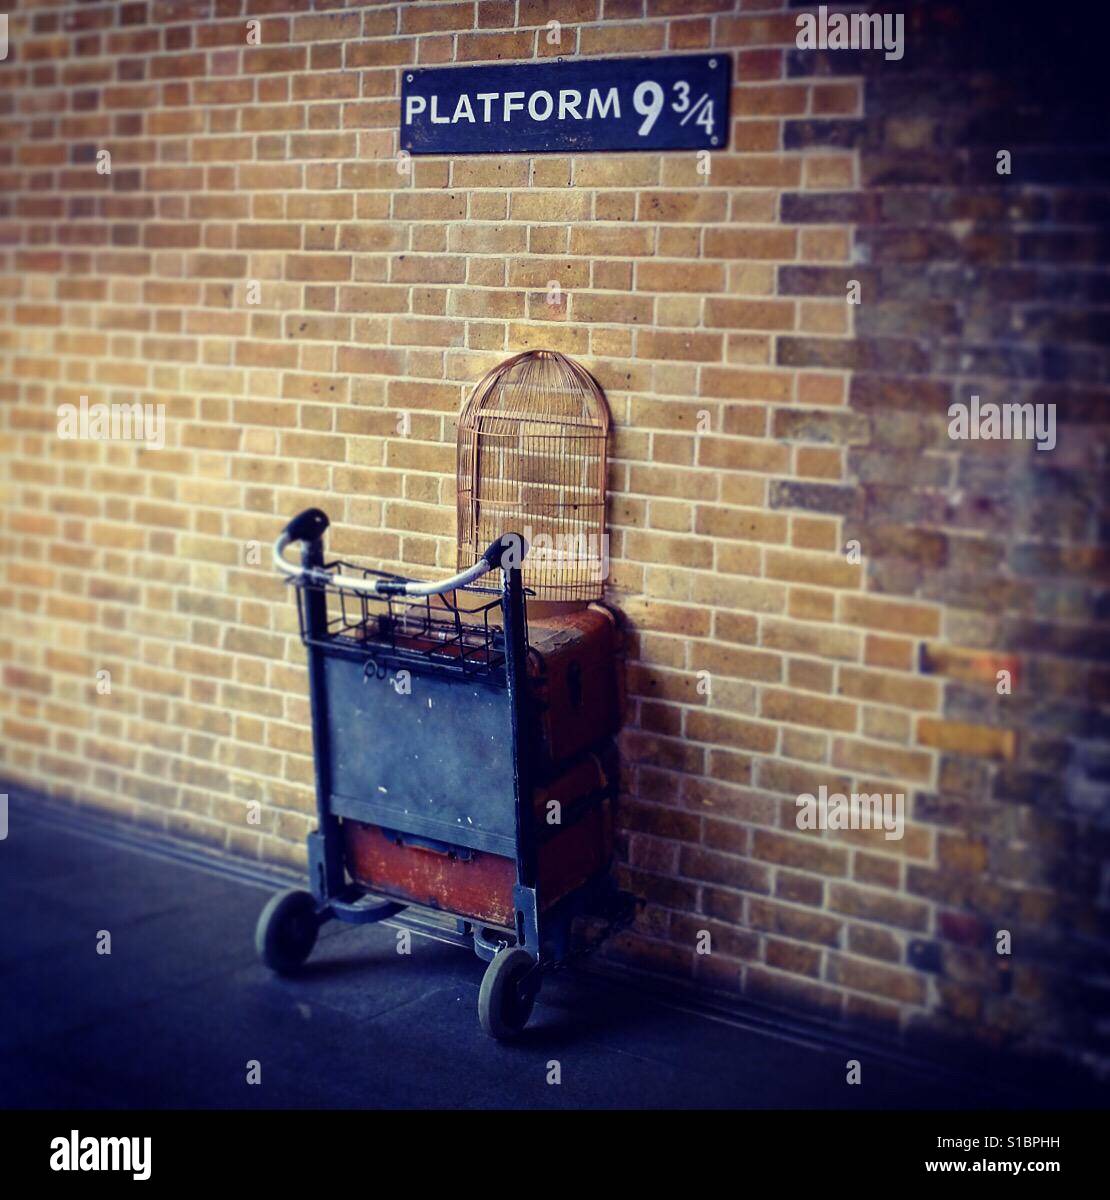 La plate-forme de Harry Potter 9 & 3/4 à la gare de King's Cross de Londres. Banque D'Images